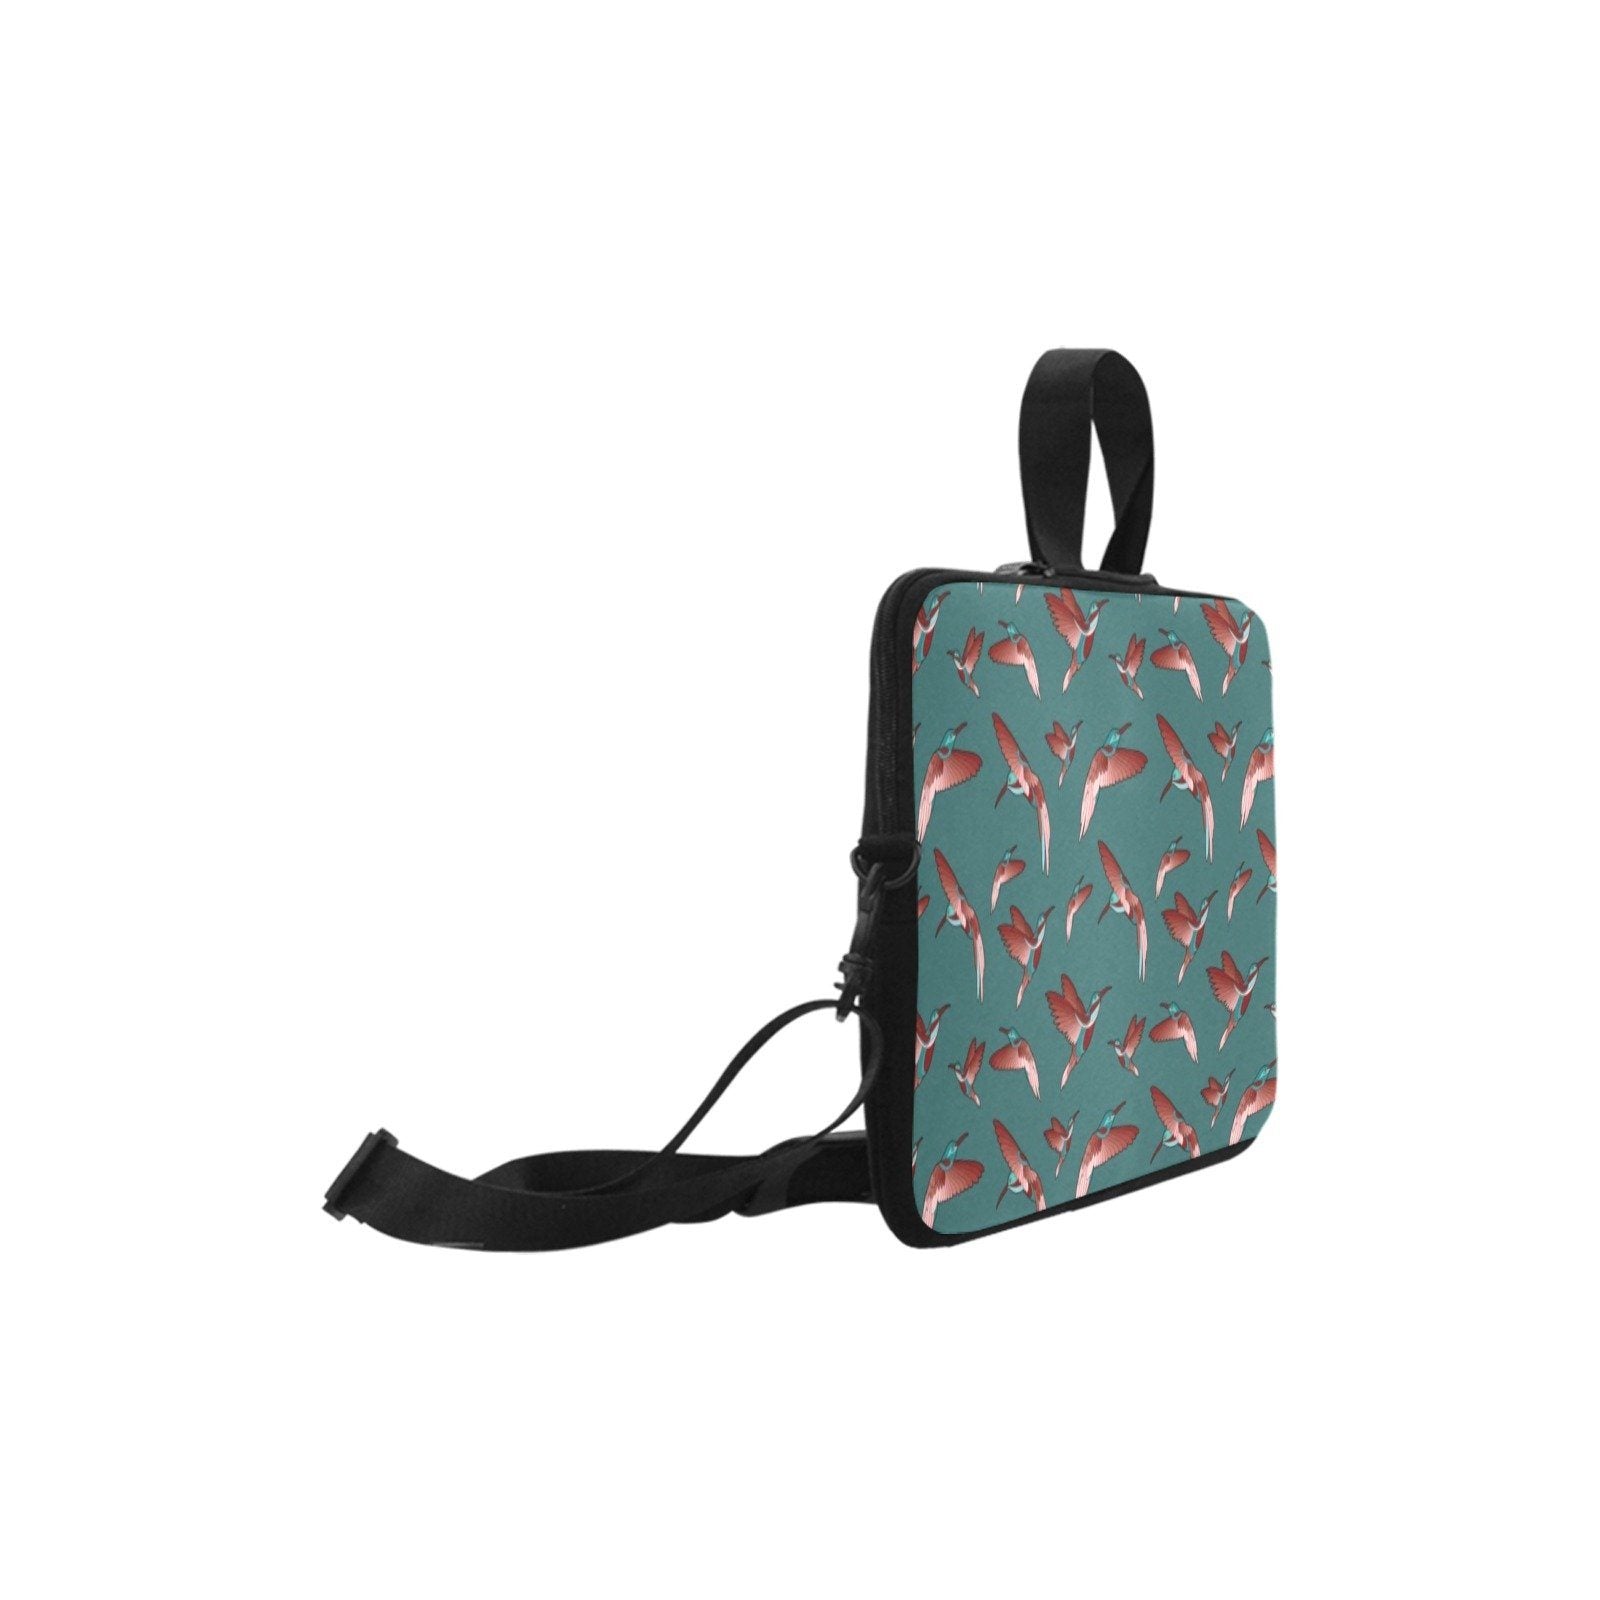 Red Swift Turquoise Laptop Handbags 10" bag e-joyer 